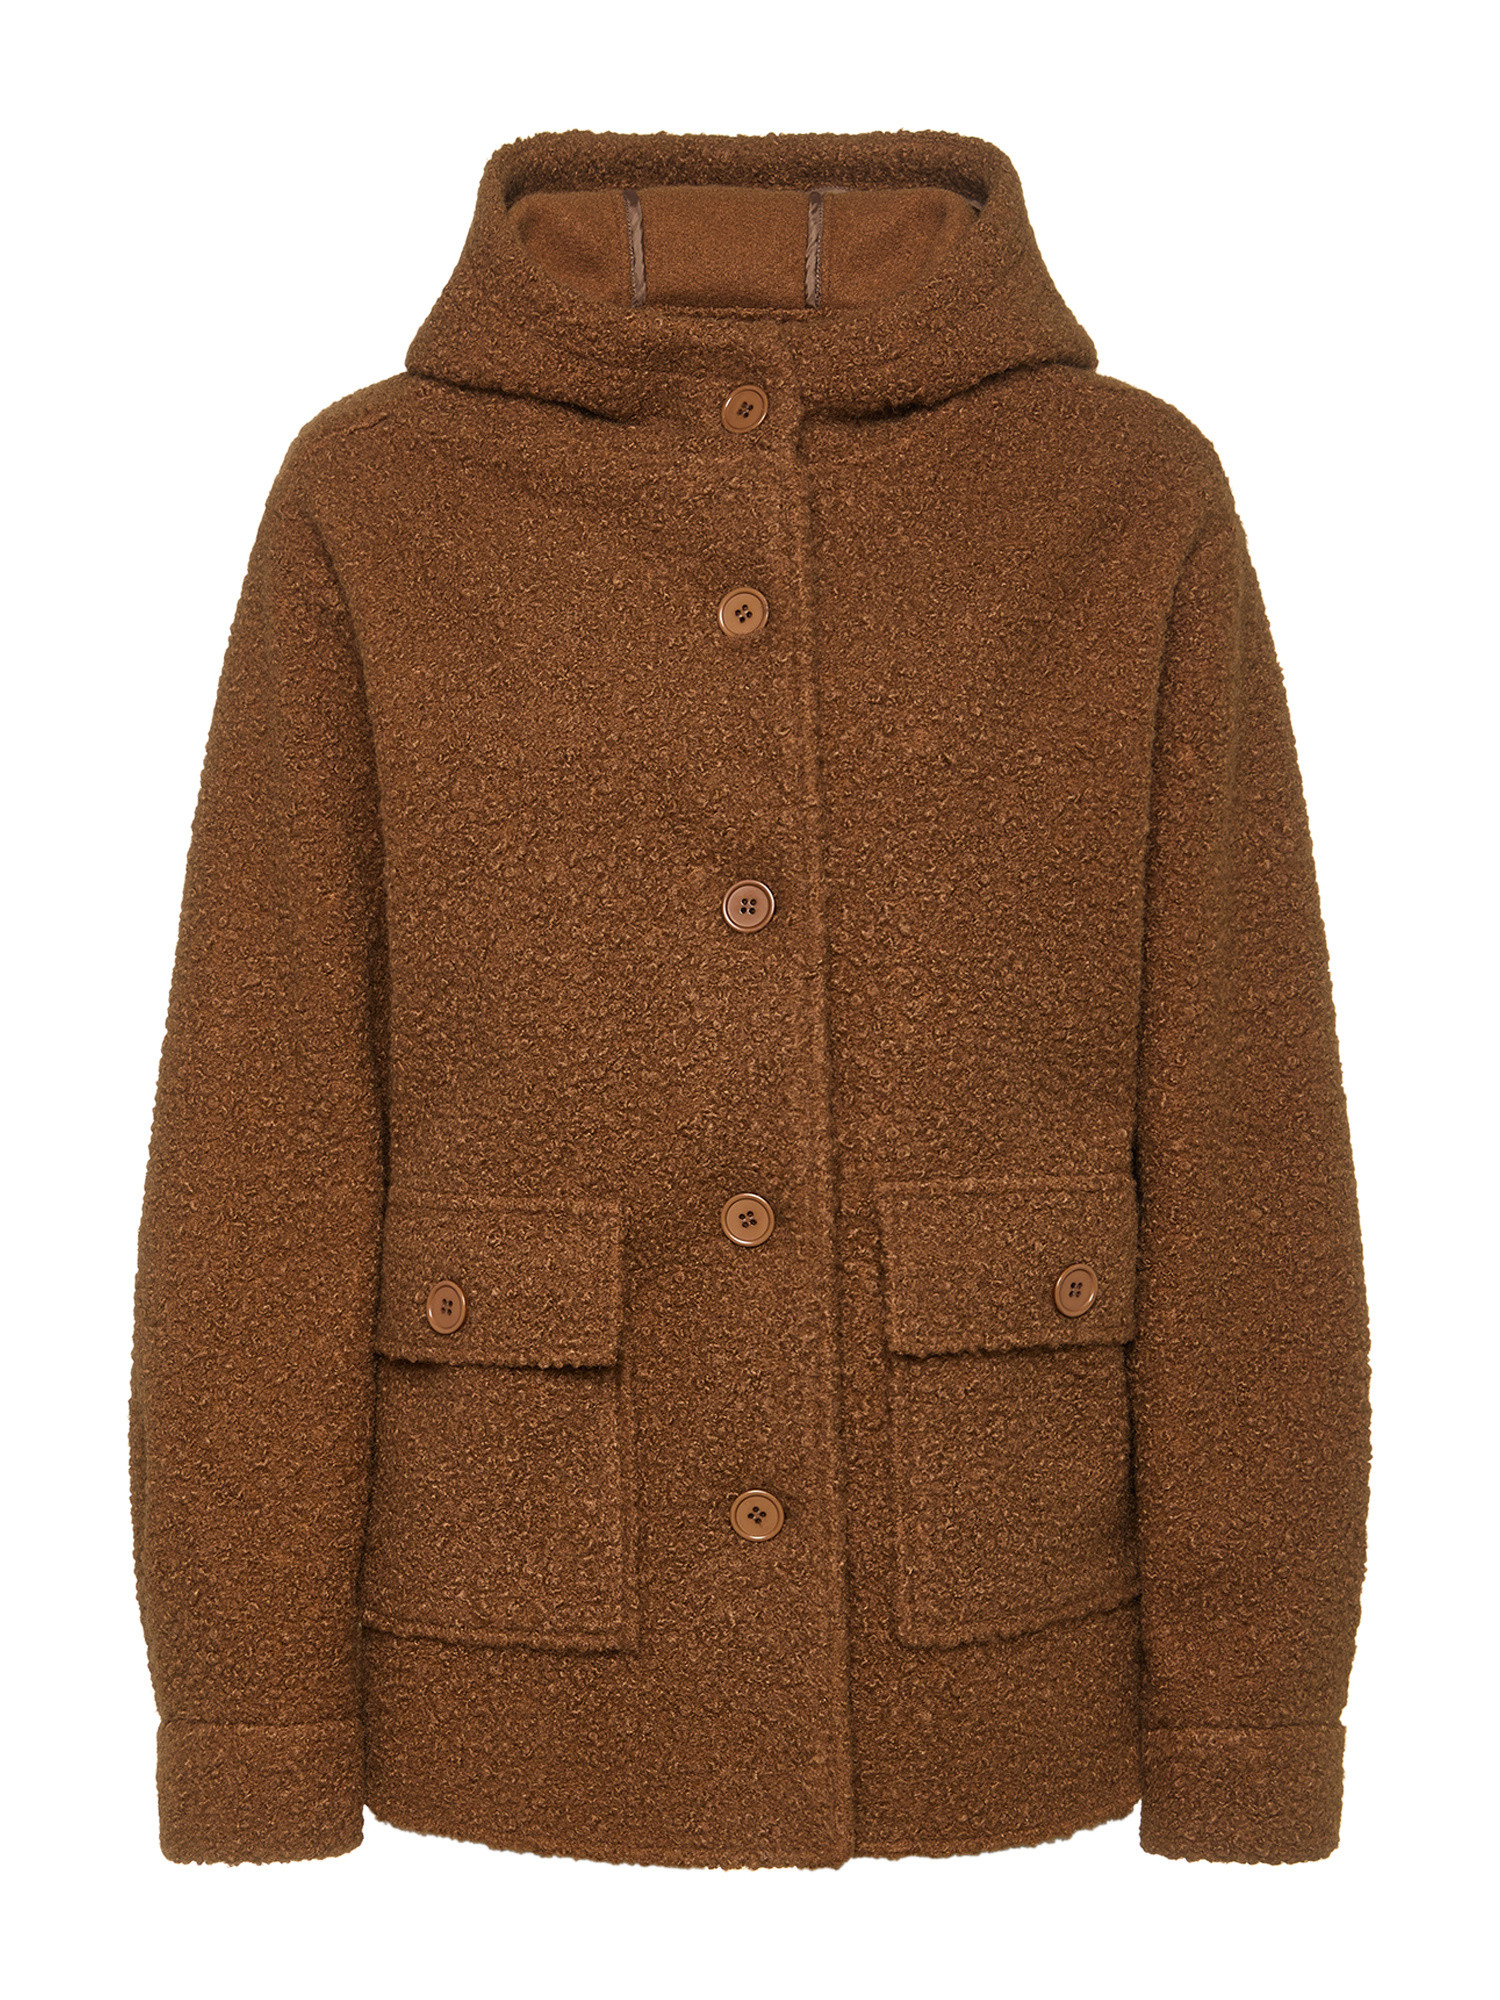 Koan Collection Короткая куртка с капюшоном., коричневый куртка короткая с капюшоном power s черный